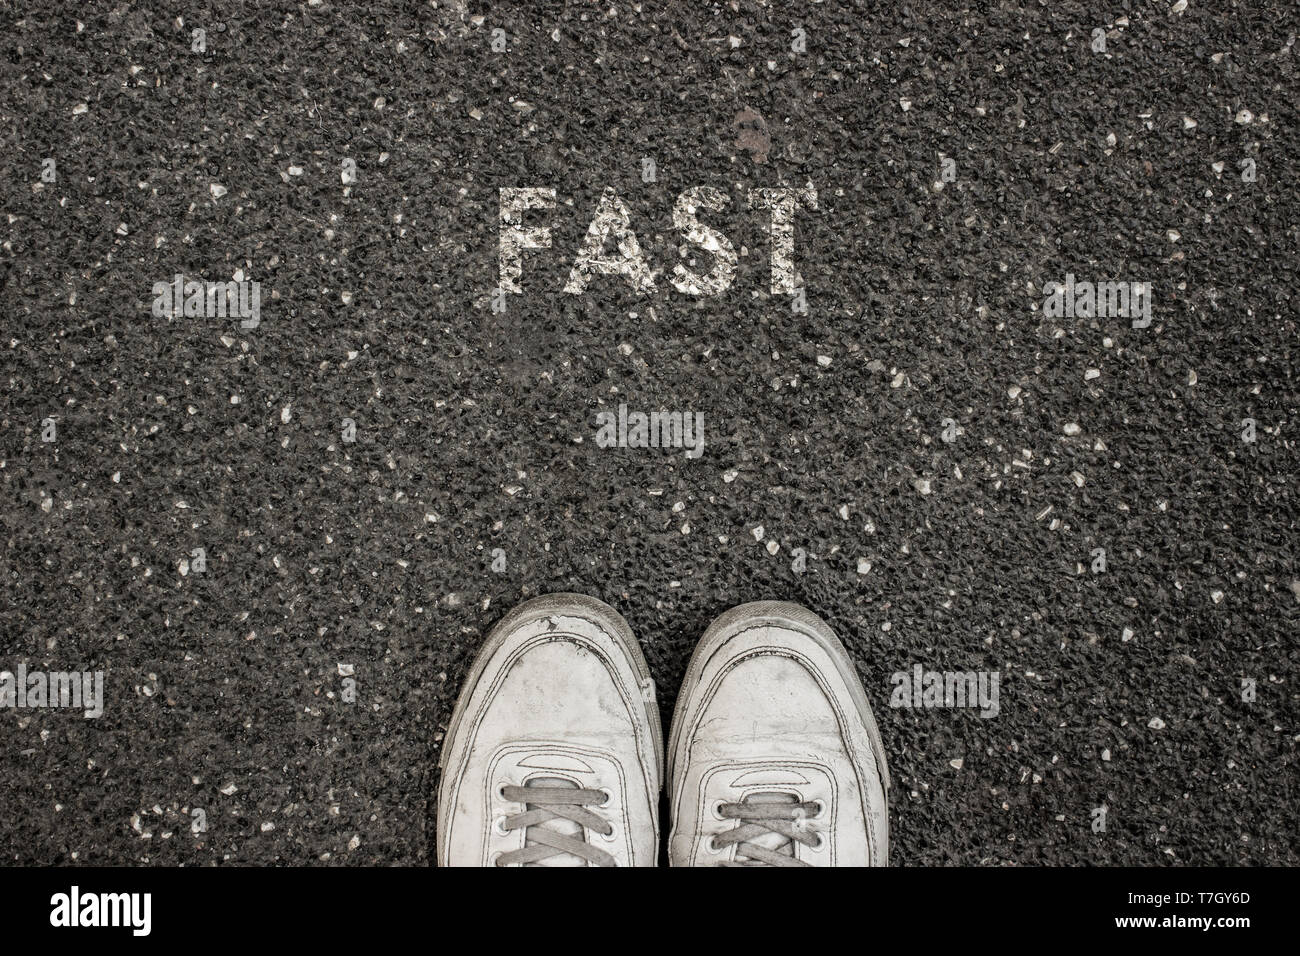 Nuevo concepto de vida, calzado deportivo y la palabra escrita en asfalto, tierra, slogan de motivación. Foto de stock